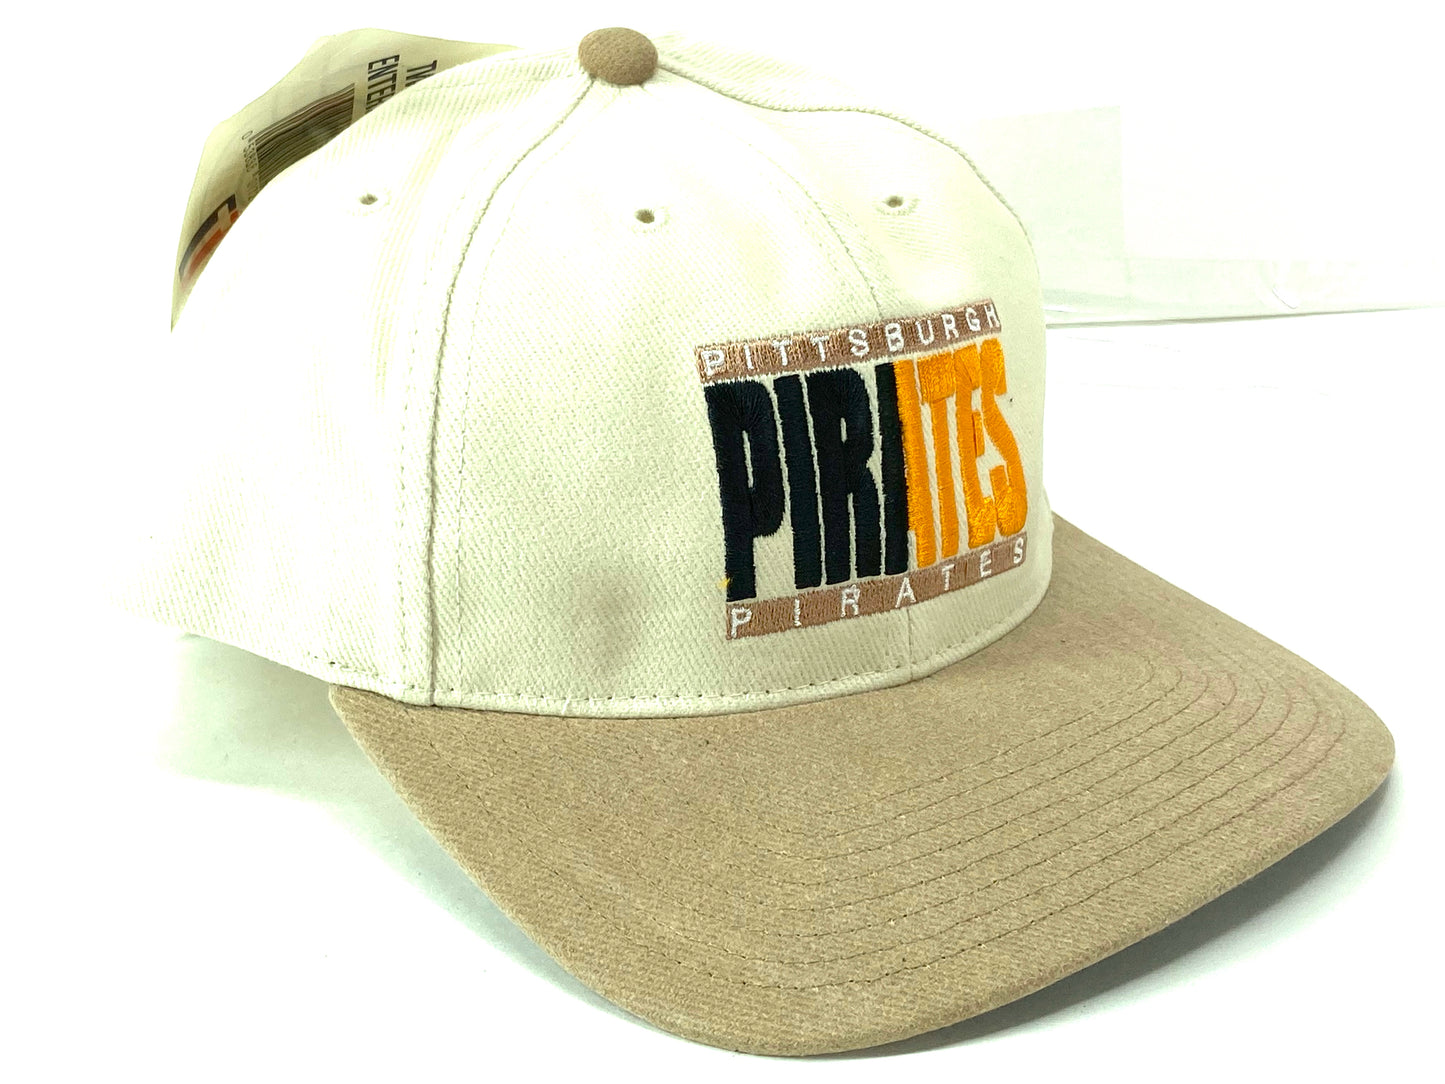 Pittsburgh Pirates Vintage MLB "50-50" Khaki Hat by Twins Enterprise